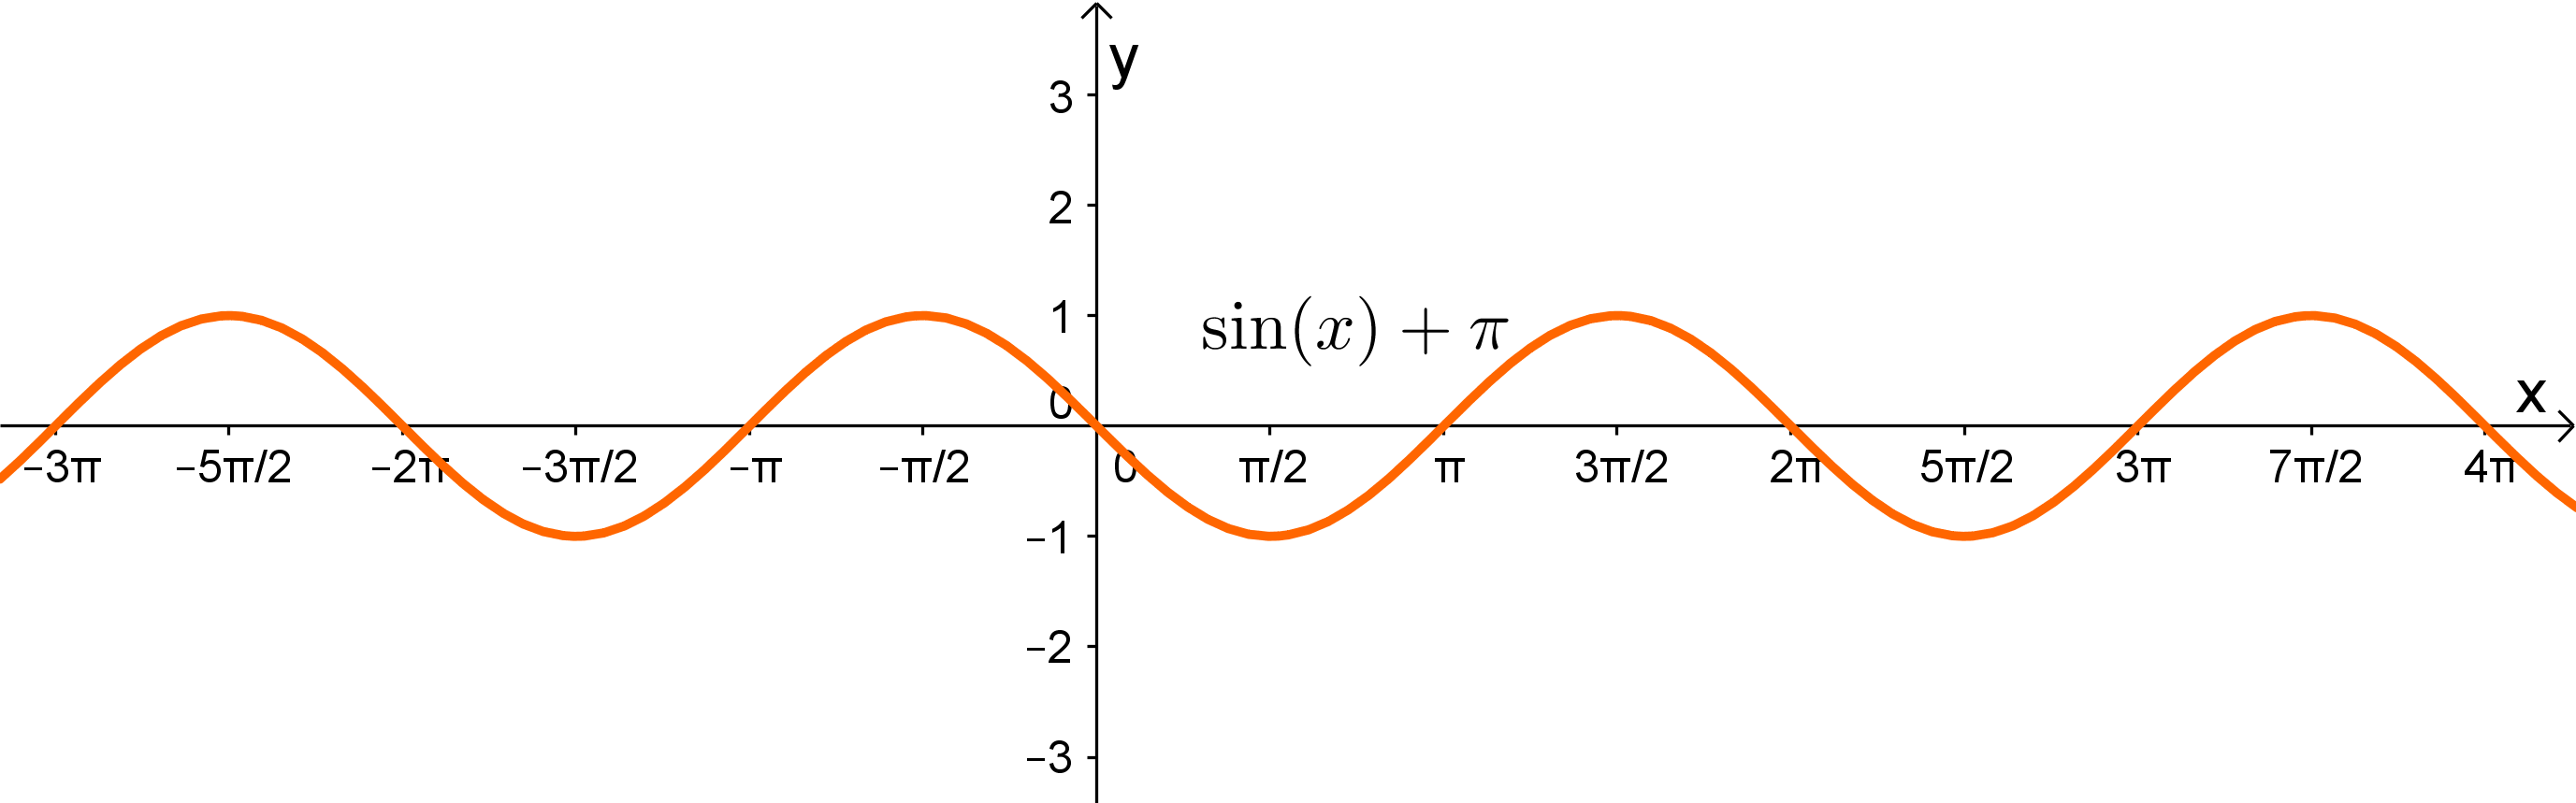 Graph zu einer Sinus Funktion